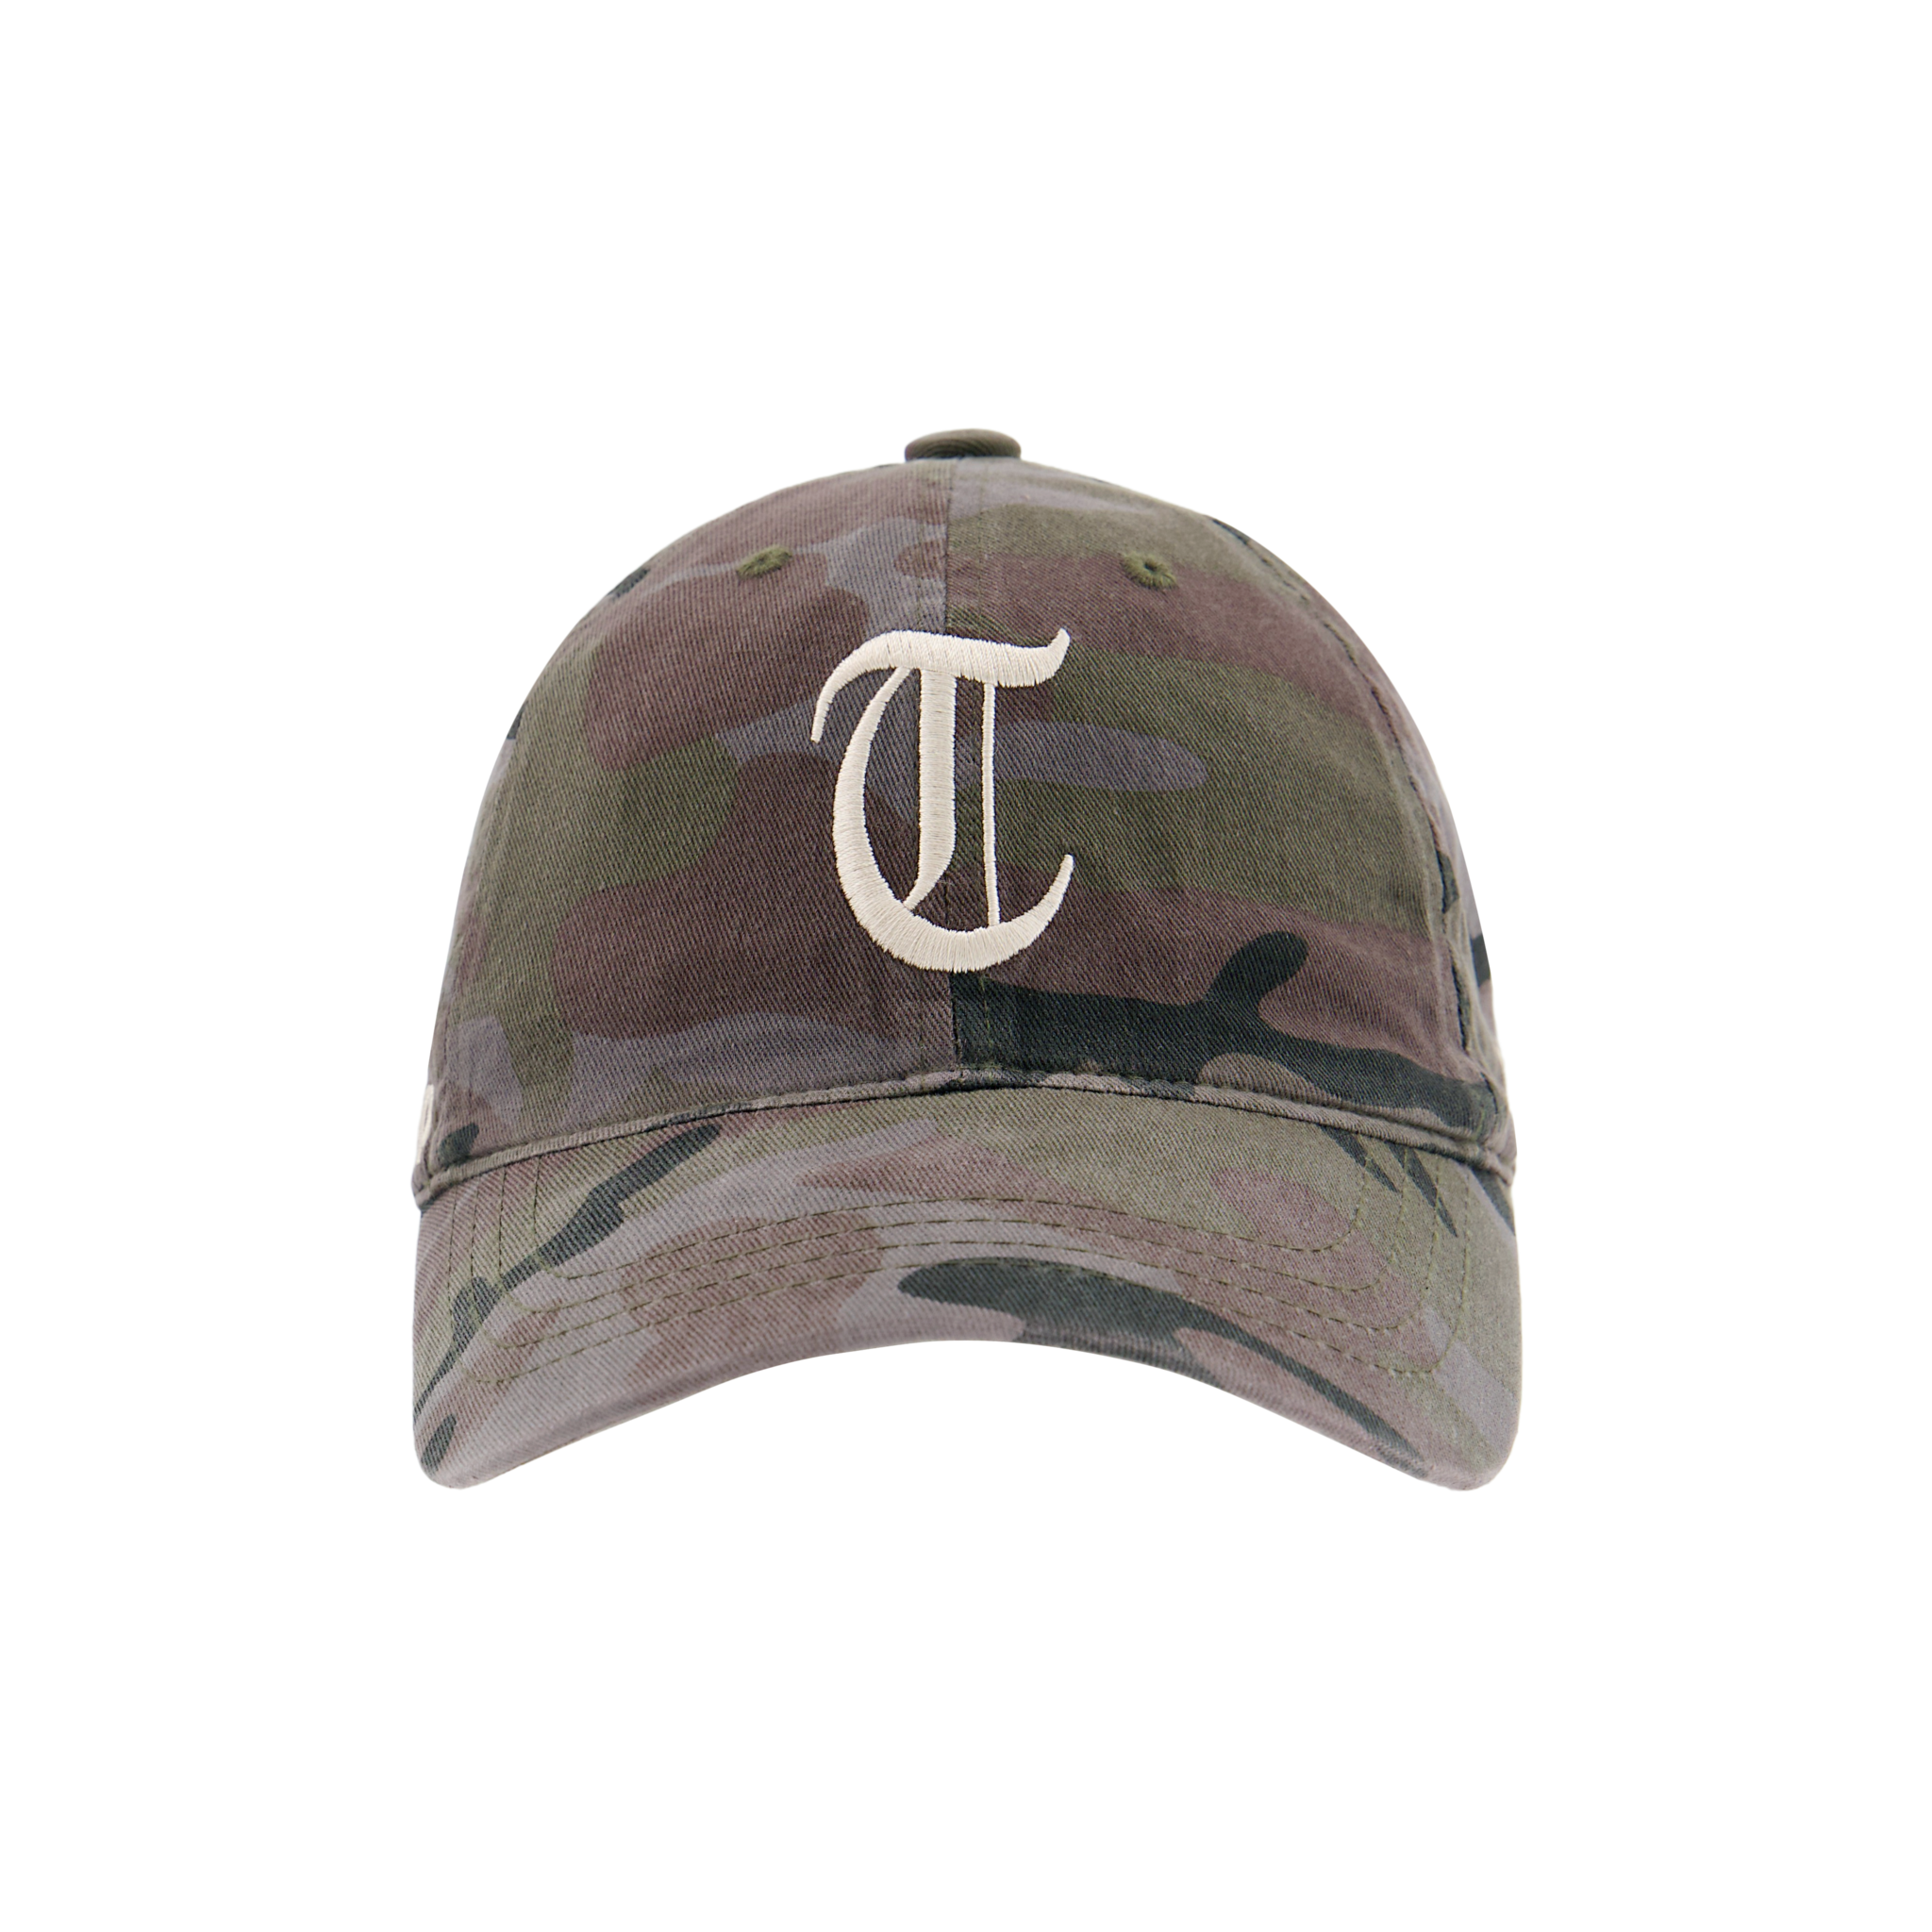 Tuewid souvenir cap ‘T’ ‘U’ ‘E’ ‘W’ ‘I’ ‘D’  (Camo ash)